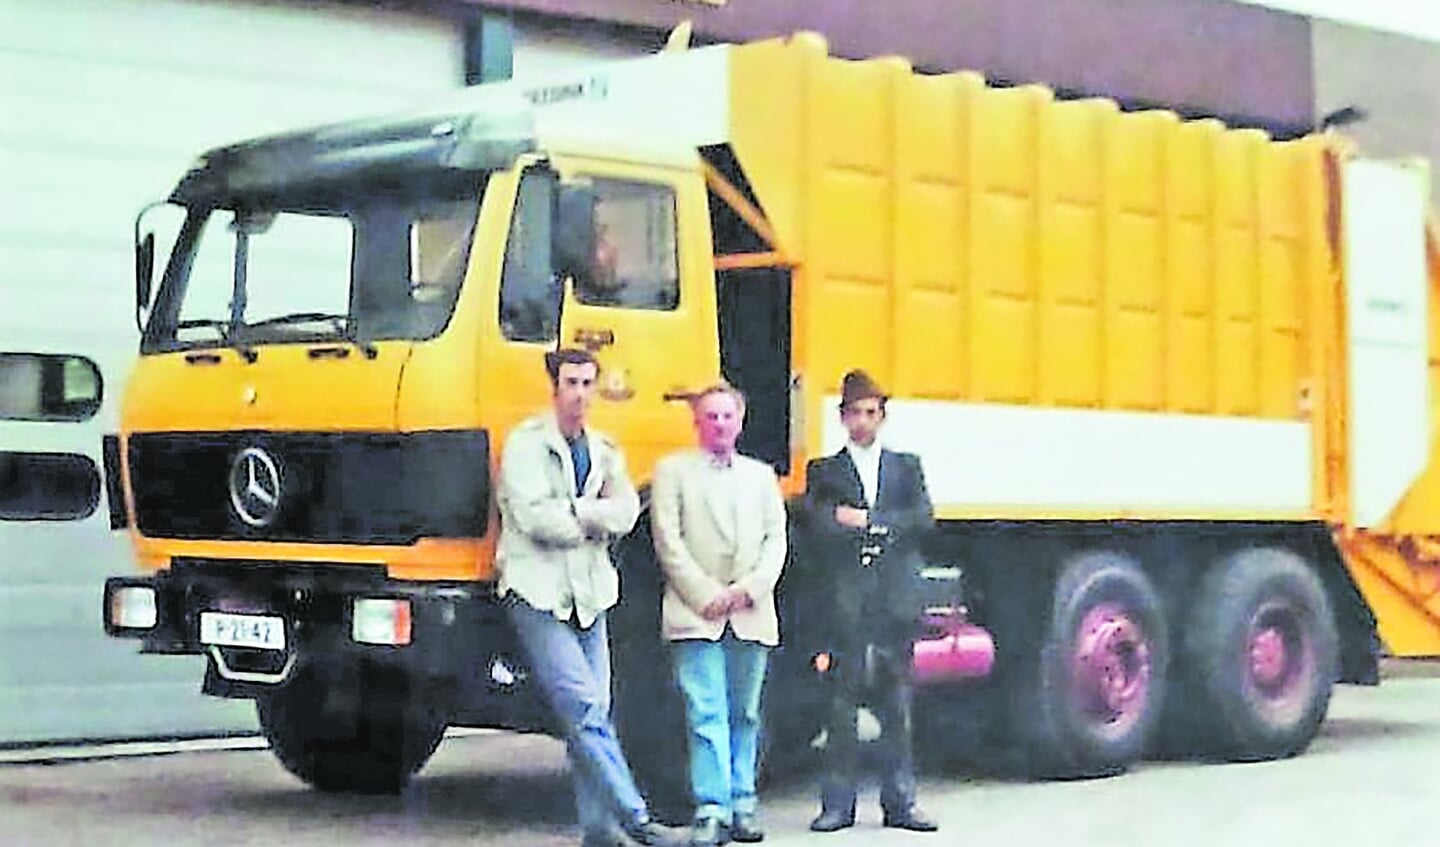 De trotse Kees Nouens, Nico van Harmelen en Piet Oorschot bij hun spiksplinternieuwe Mercedes vuilniswagen.